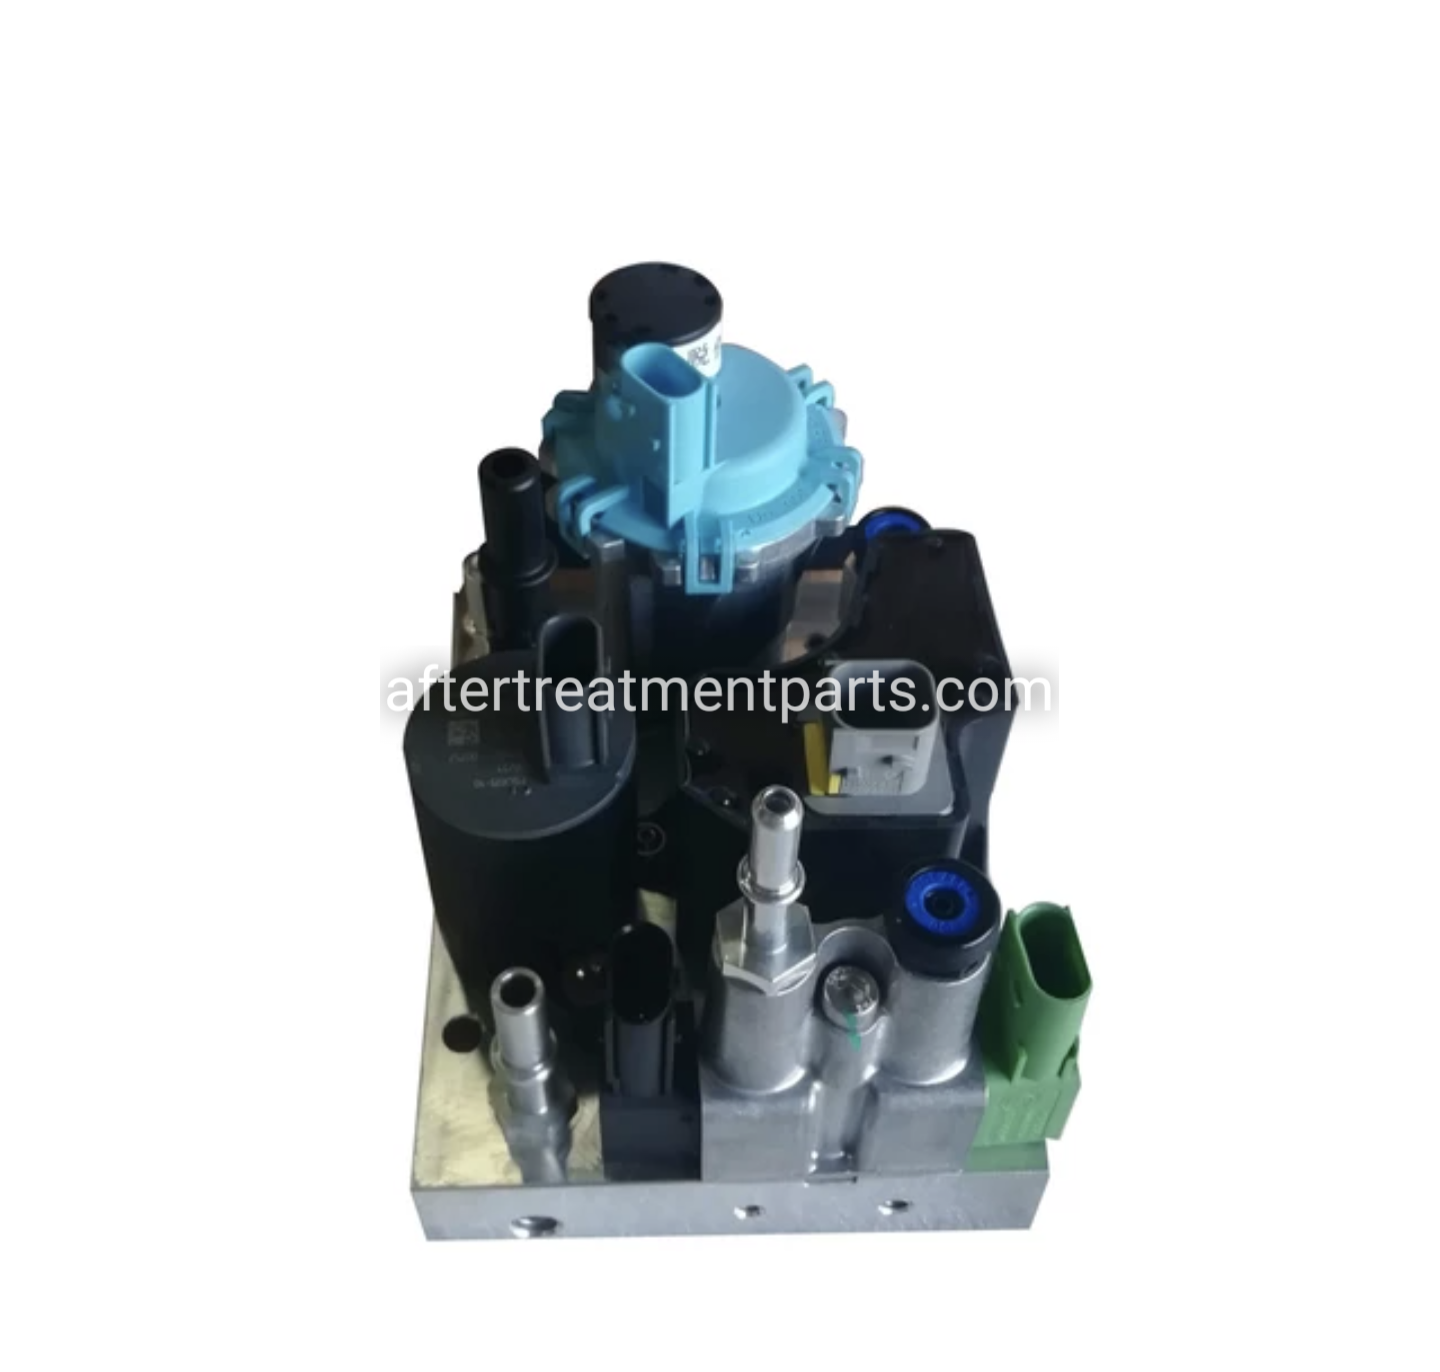 22209519, 23387854, 85022215 - DEF Pump - for Liebherr & Volvo equipment